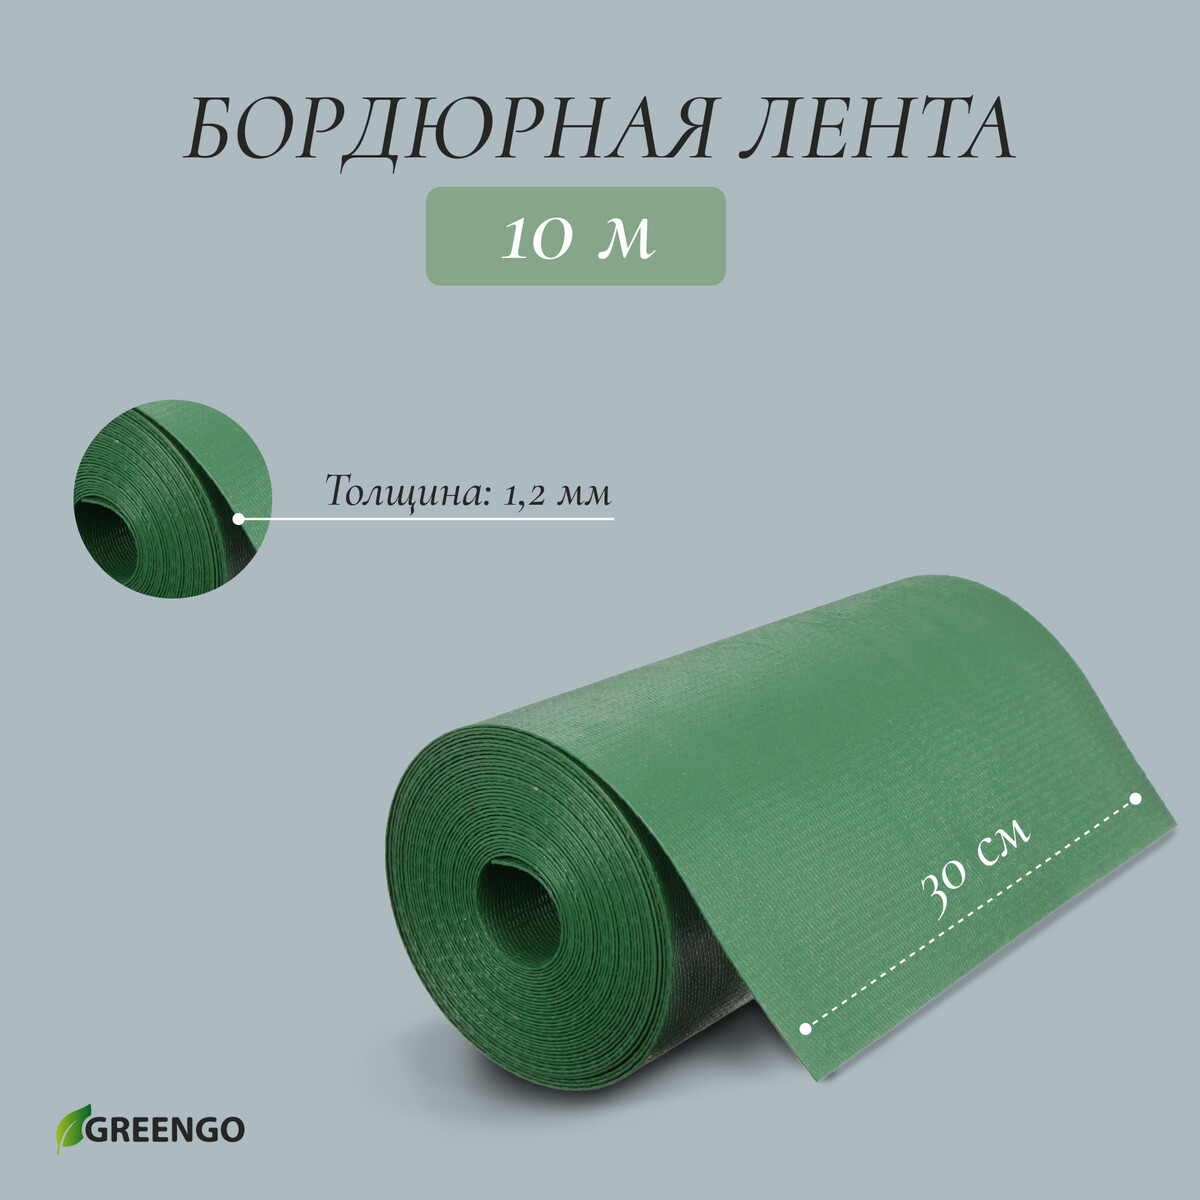 Лента бордюрная, 0.3 × 10 м, толщина 1.2 мм, пластиковая, зеленая, greengo